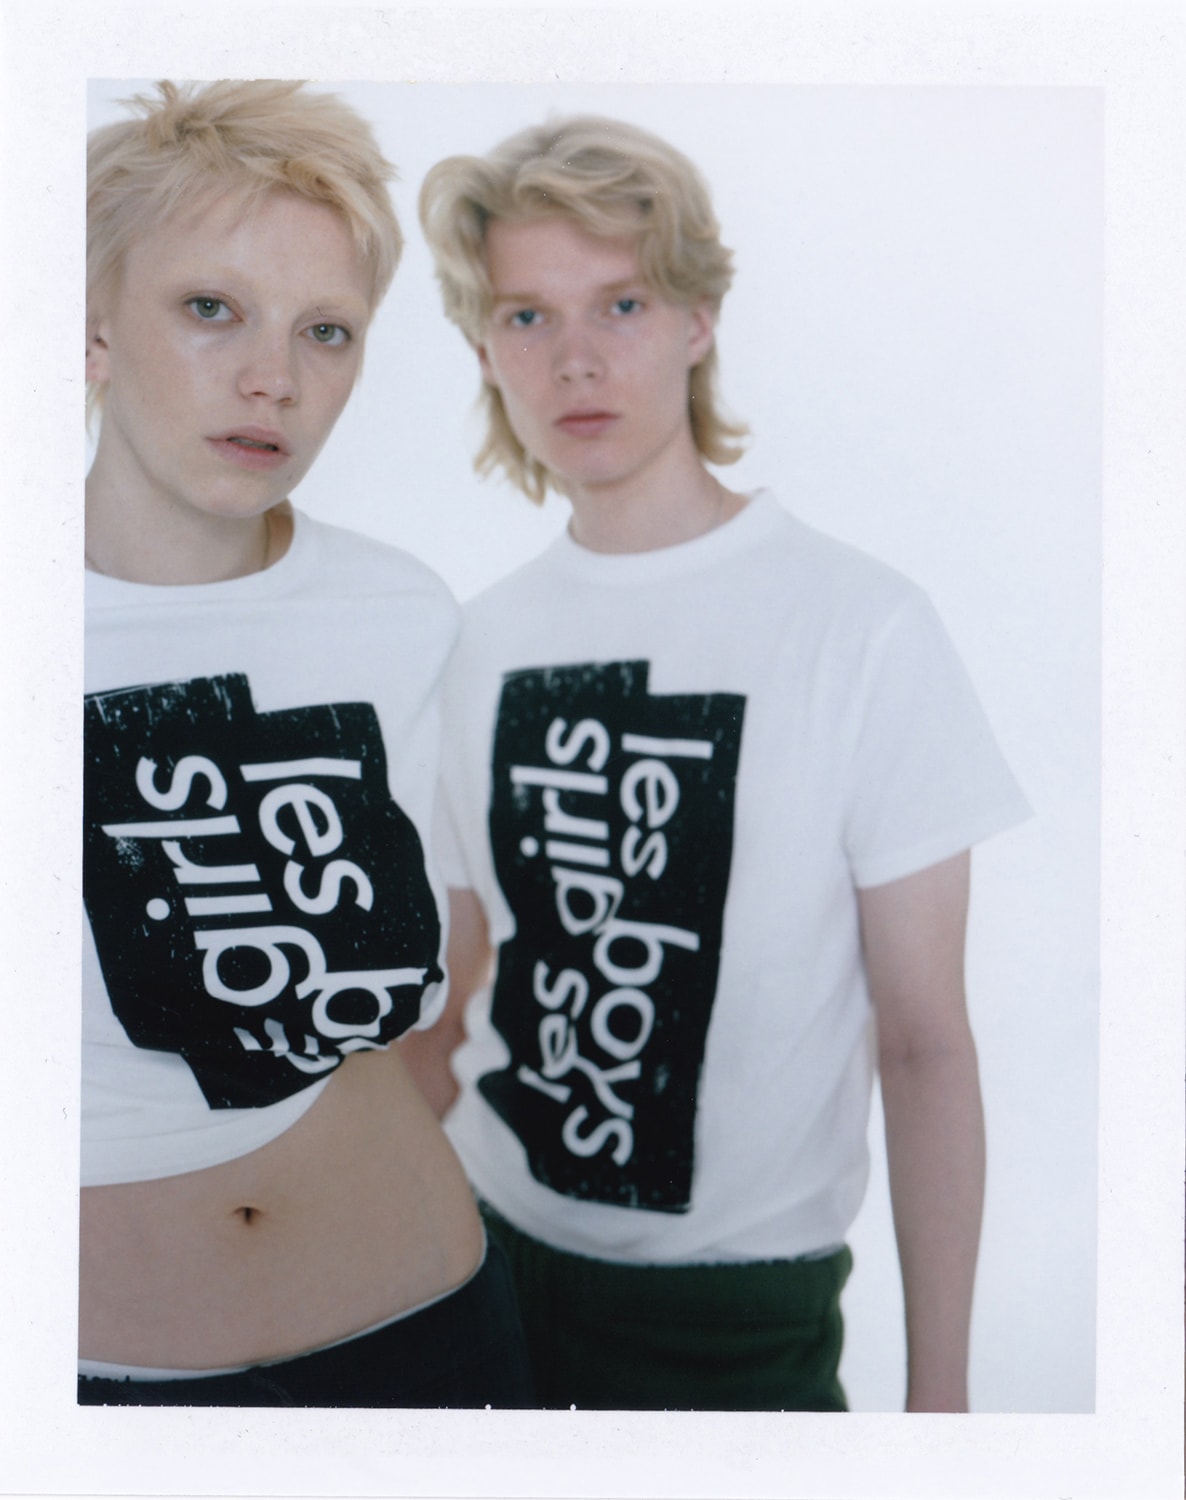 les girls les boys campaign beauty standards Fabien Montique polaroids lingerie unisex